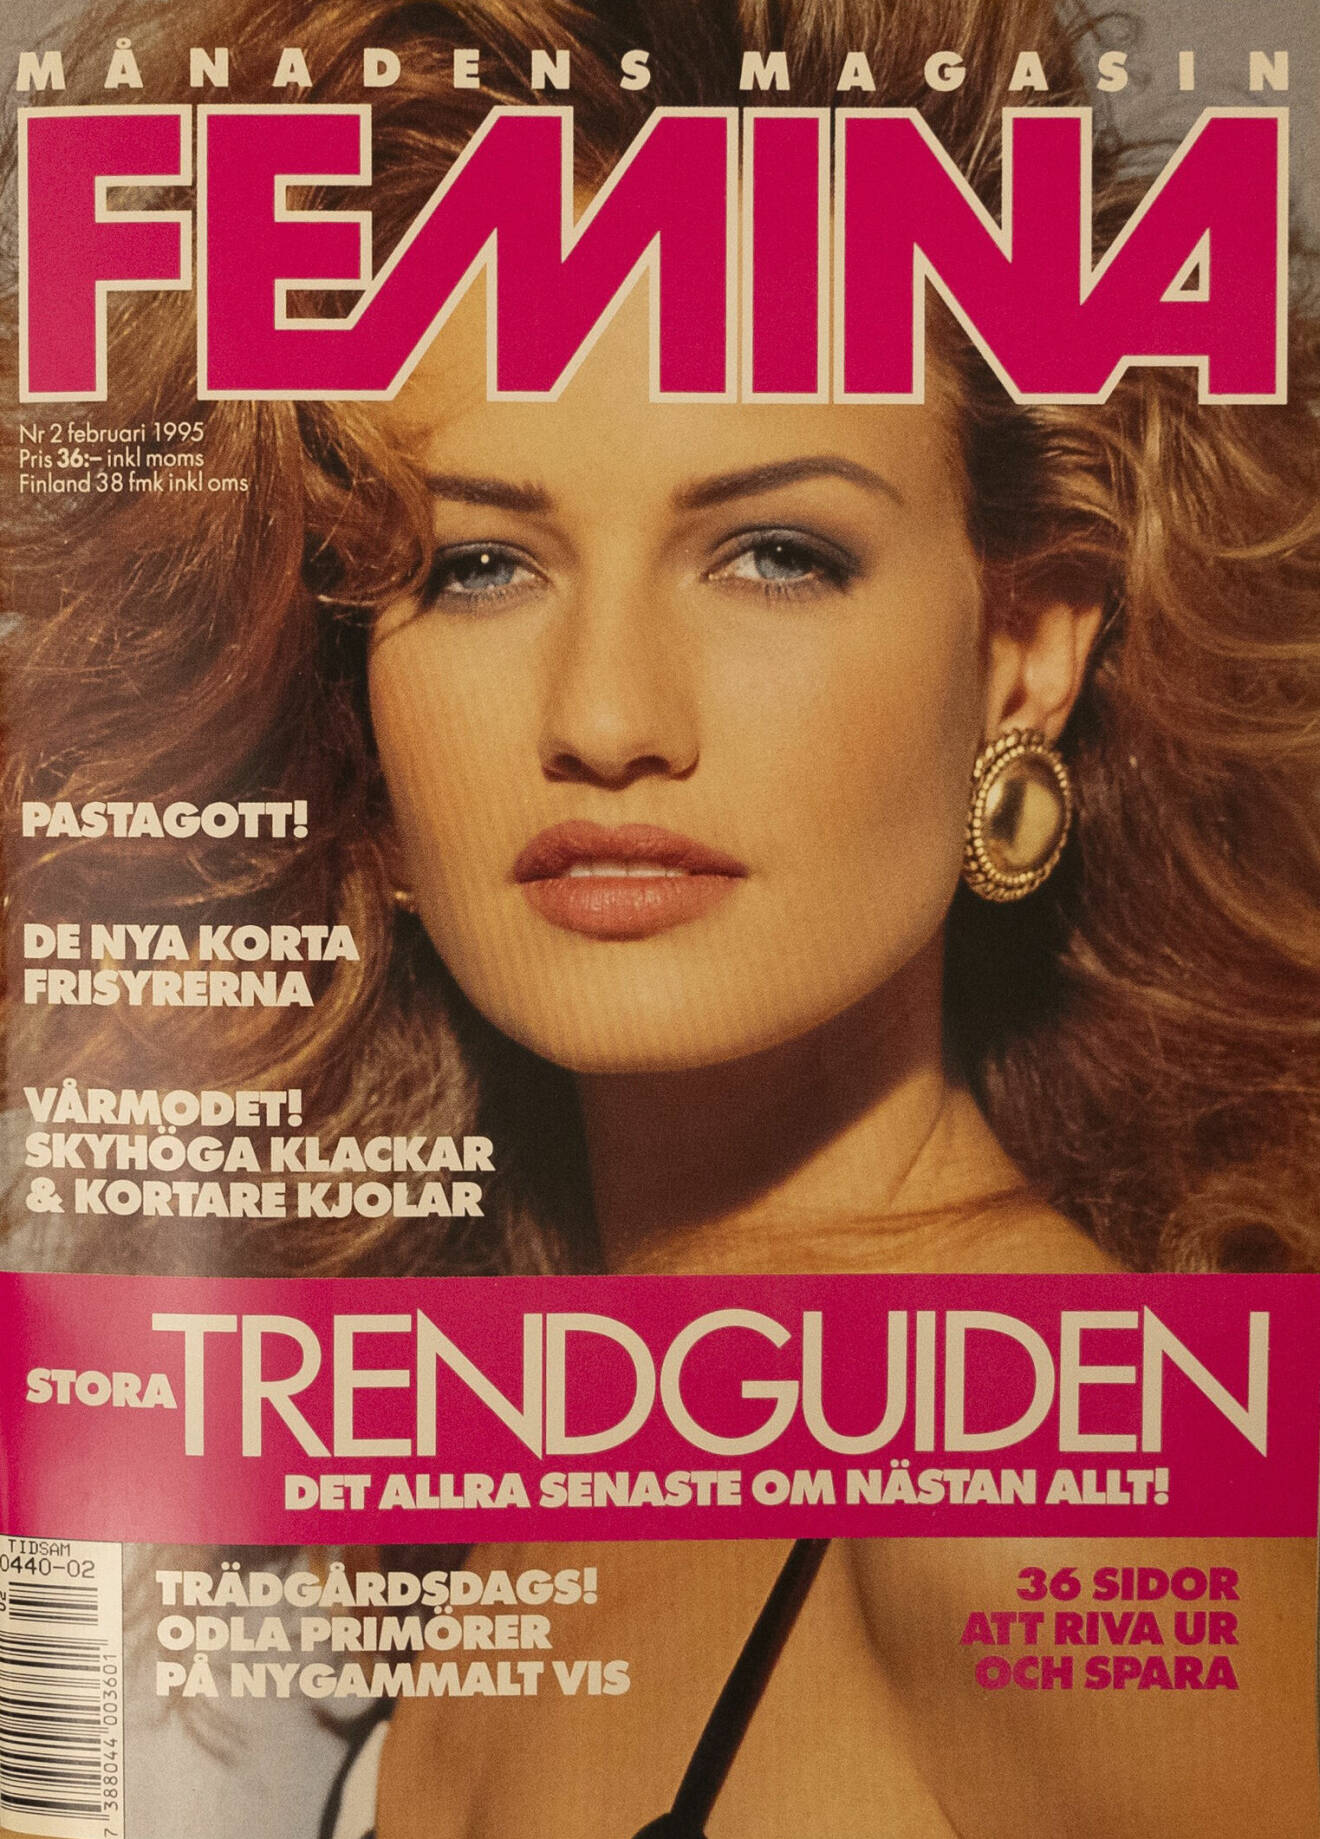 Omslag från Femina, 1990-tal